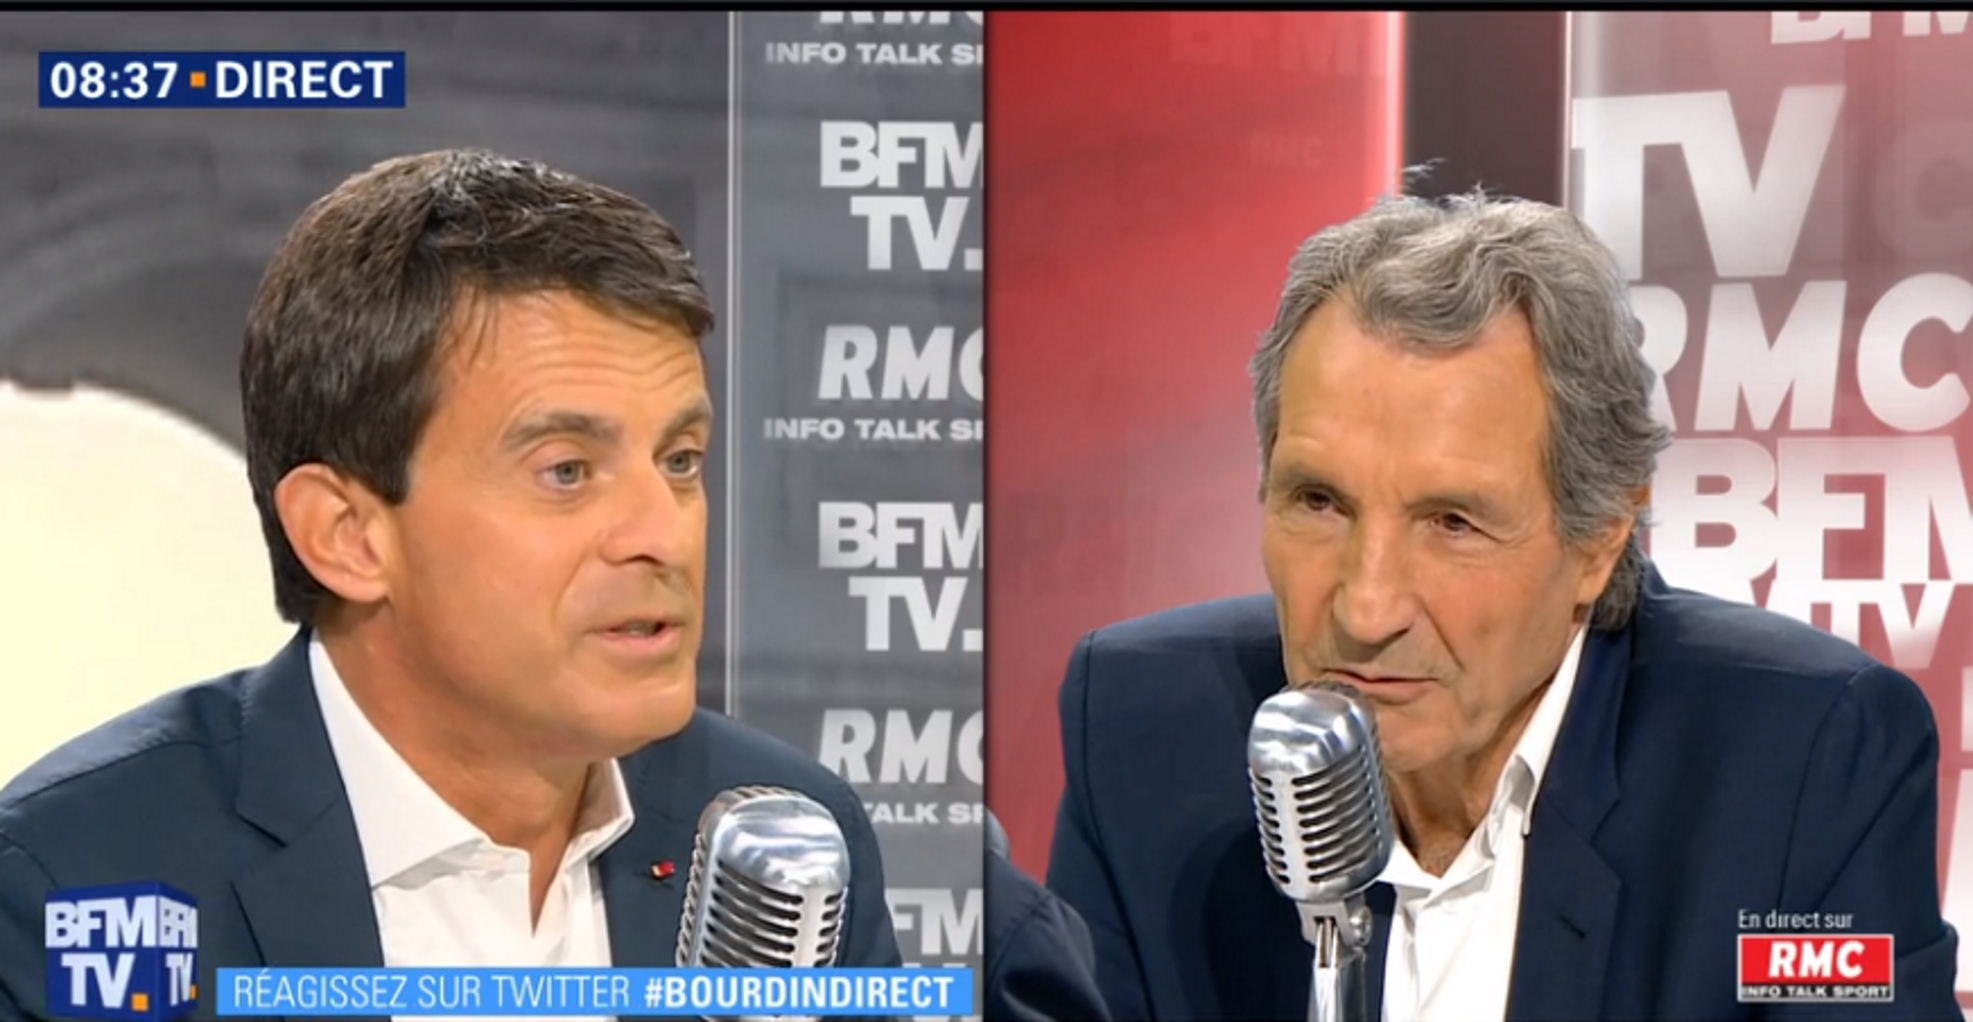 Valls dice en una TV que si no consigue la alcaldía se retirará de la política